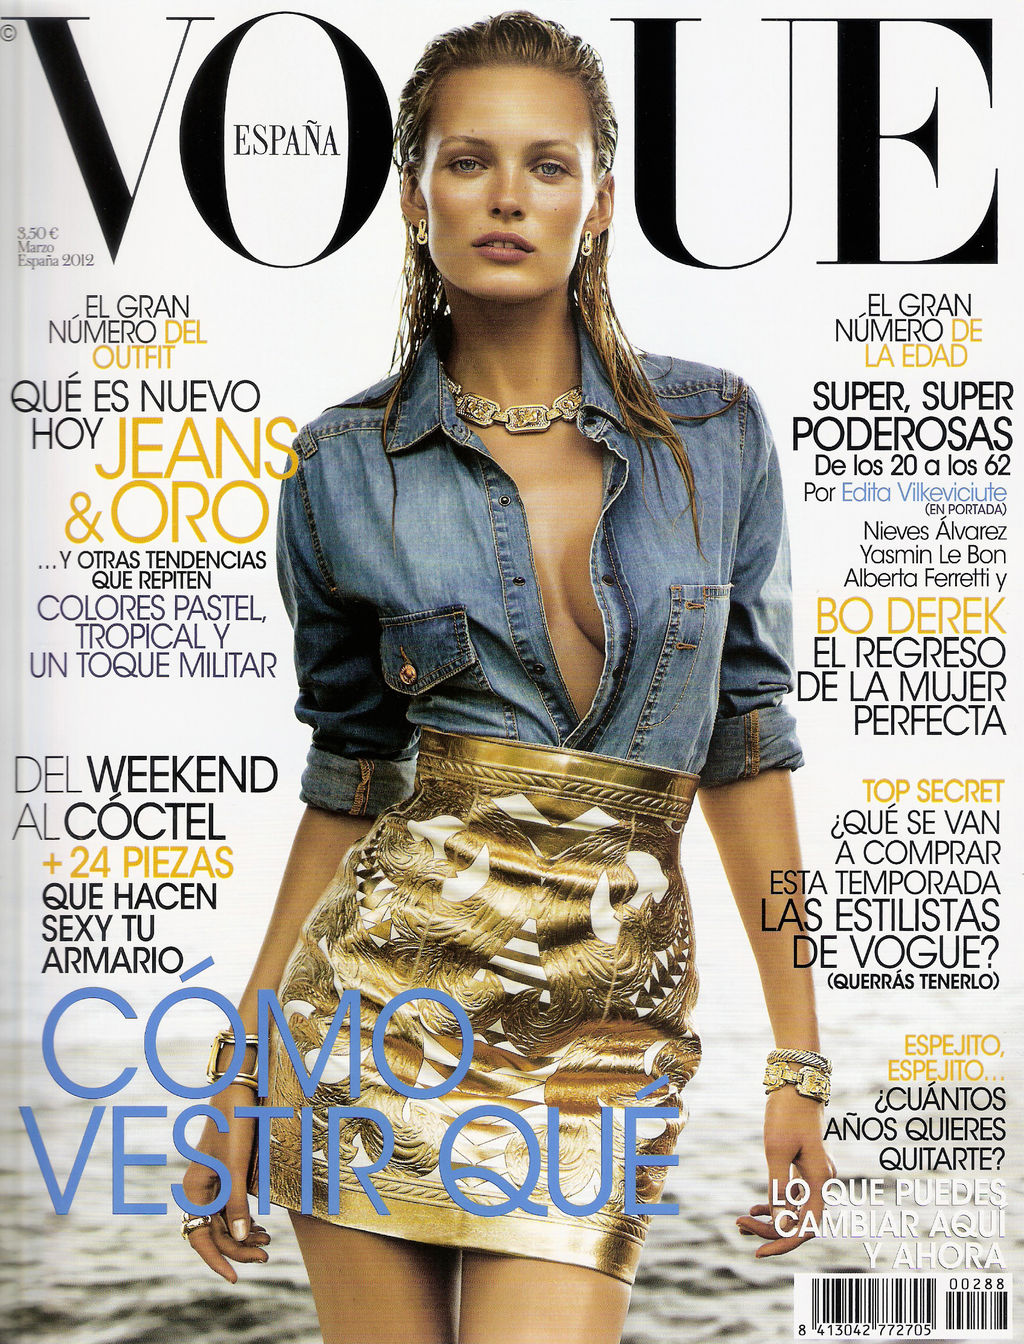 http://1.bp.blogspot.com/-dEomb4S7QZA/T0RqB6dtCHI/AAAAAAAAkN0/ktAhiy6DBVw/s1600/Vogue+Spain+March+2012+cover.jpg